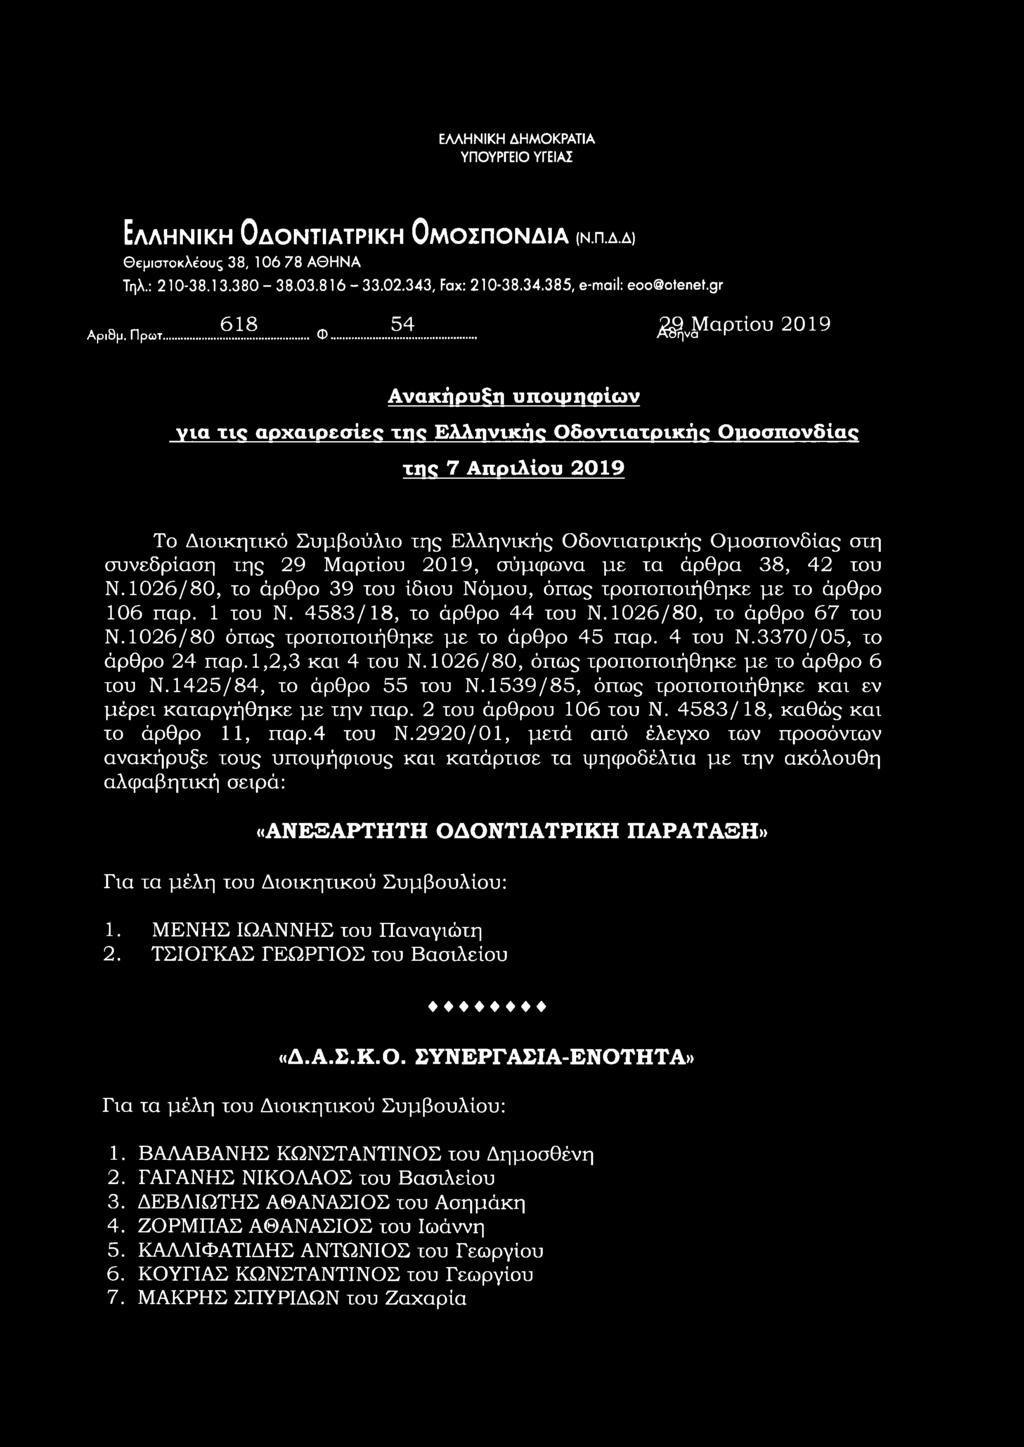 .. Ανακήρυξη υποιμηφίων για τις αρχαιρεσίες της Ελληνικής Οδοντιατρικής Ομοσπονδίας της 7 Απριλίου 2019 Το Διοικητικό Συμβούλιο της Ελληνικής Οδοντιατρικής Ομοσπονδίας στη συνεδρίαση της 29 Μαρτίου